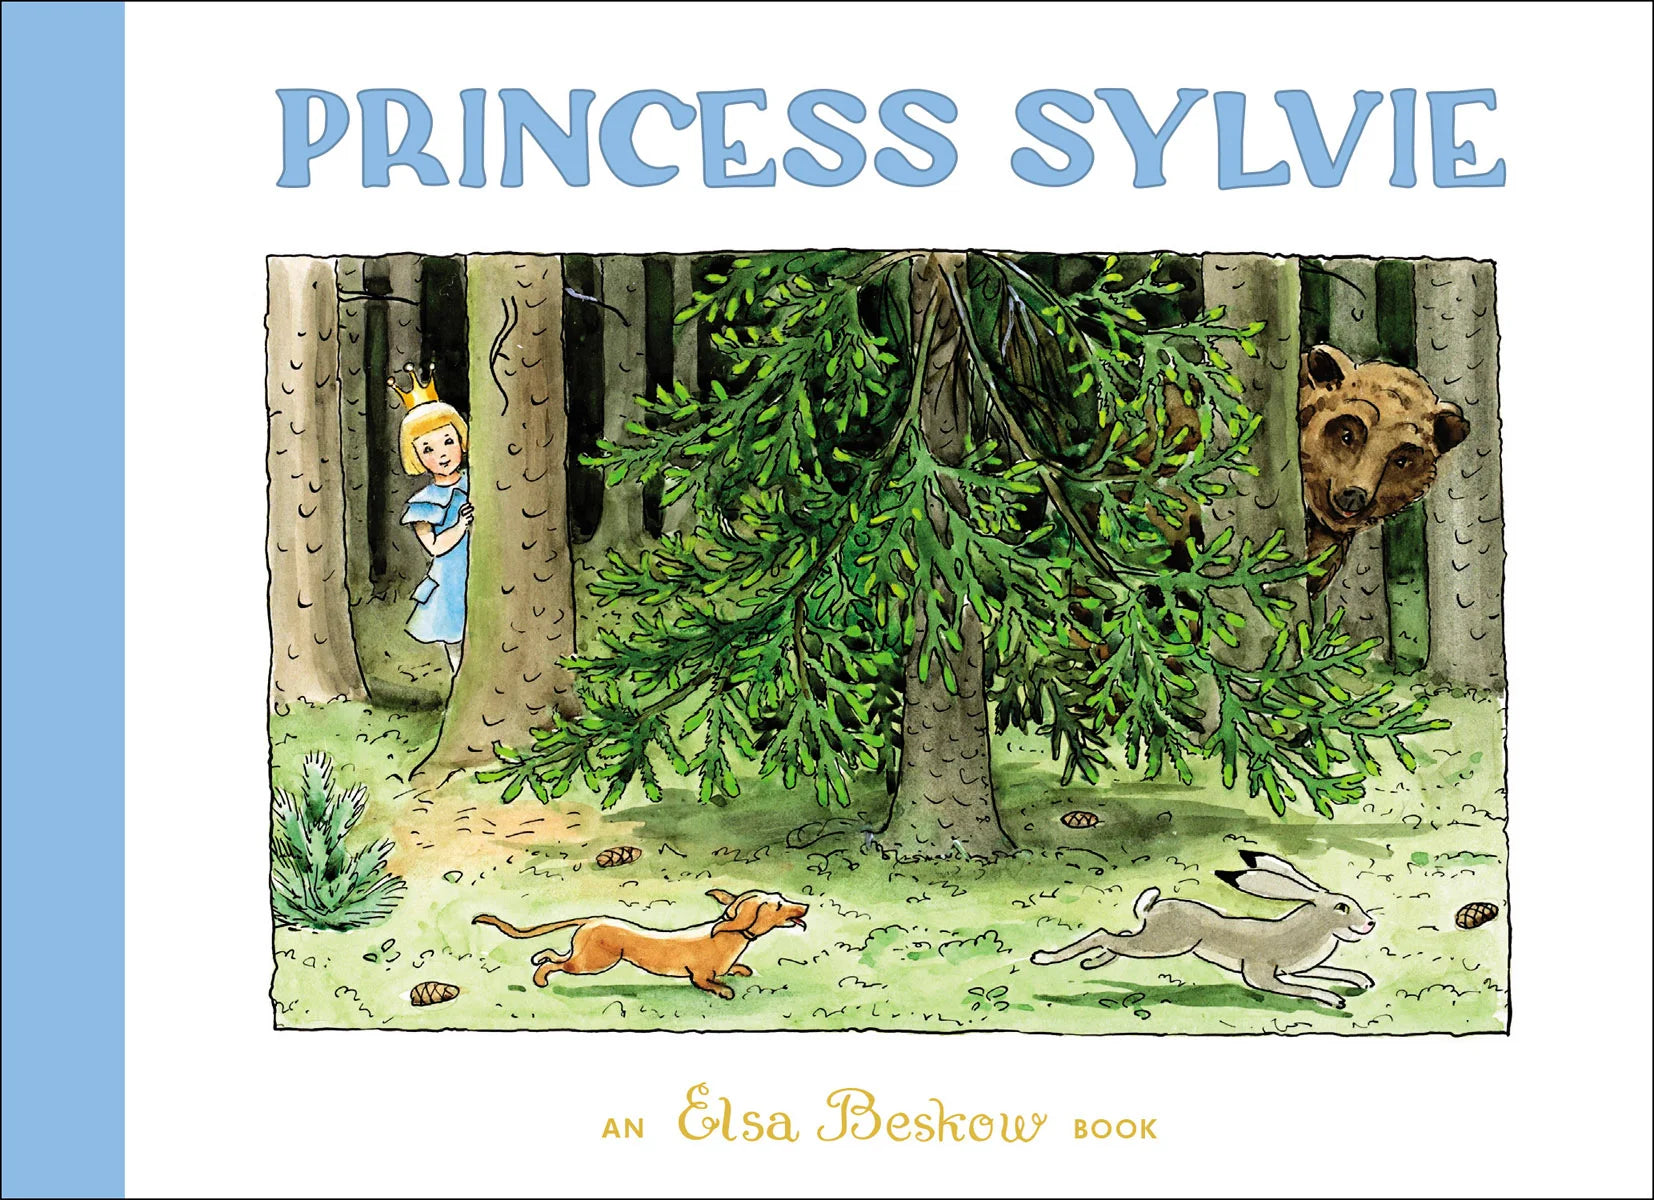 Princess Sylvie by Elsa Beskow - Alder & Alouette